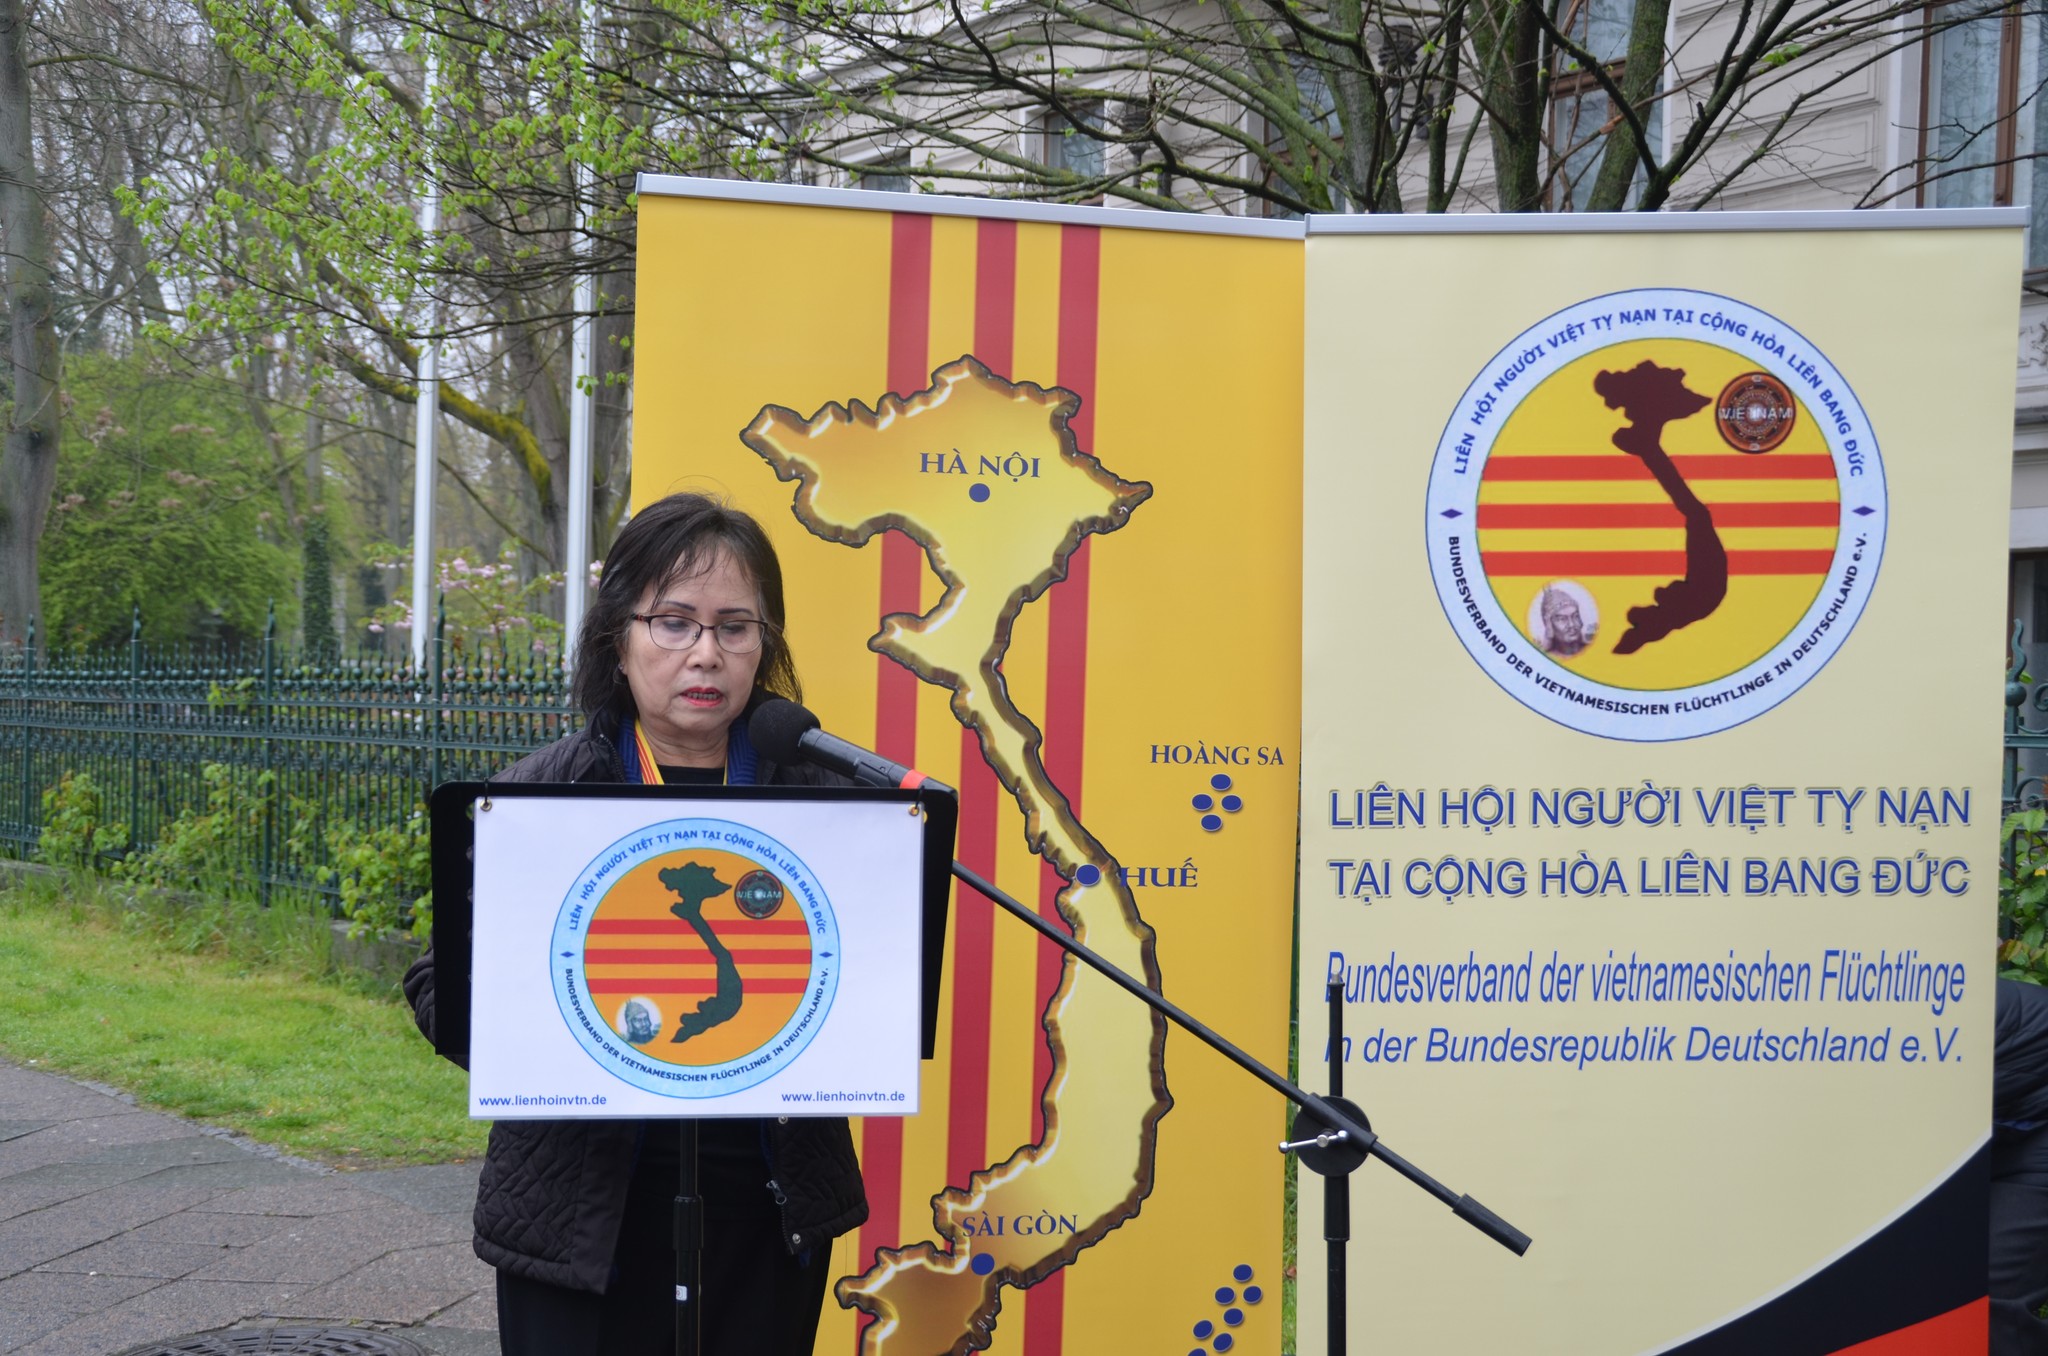 Bác sĩ Hoàng Thị Mỹ Lâm, Chủ tịch Liên Hội Ngưòi Việt Tỵ Nạn tại CHLB Đức mở đầu ngày sinh hoạt đấu tranh 30/4 bằng diễn văn khai mạc cuộc biểu tình trước Đại sứ quán CSVN tại Berlin (tòa nhà phía sau)